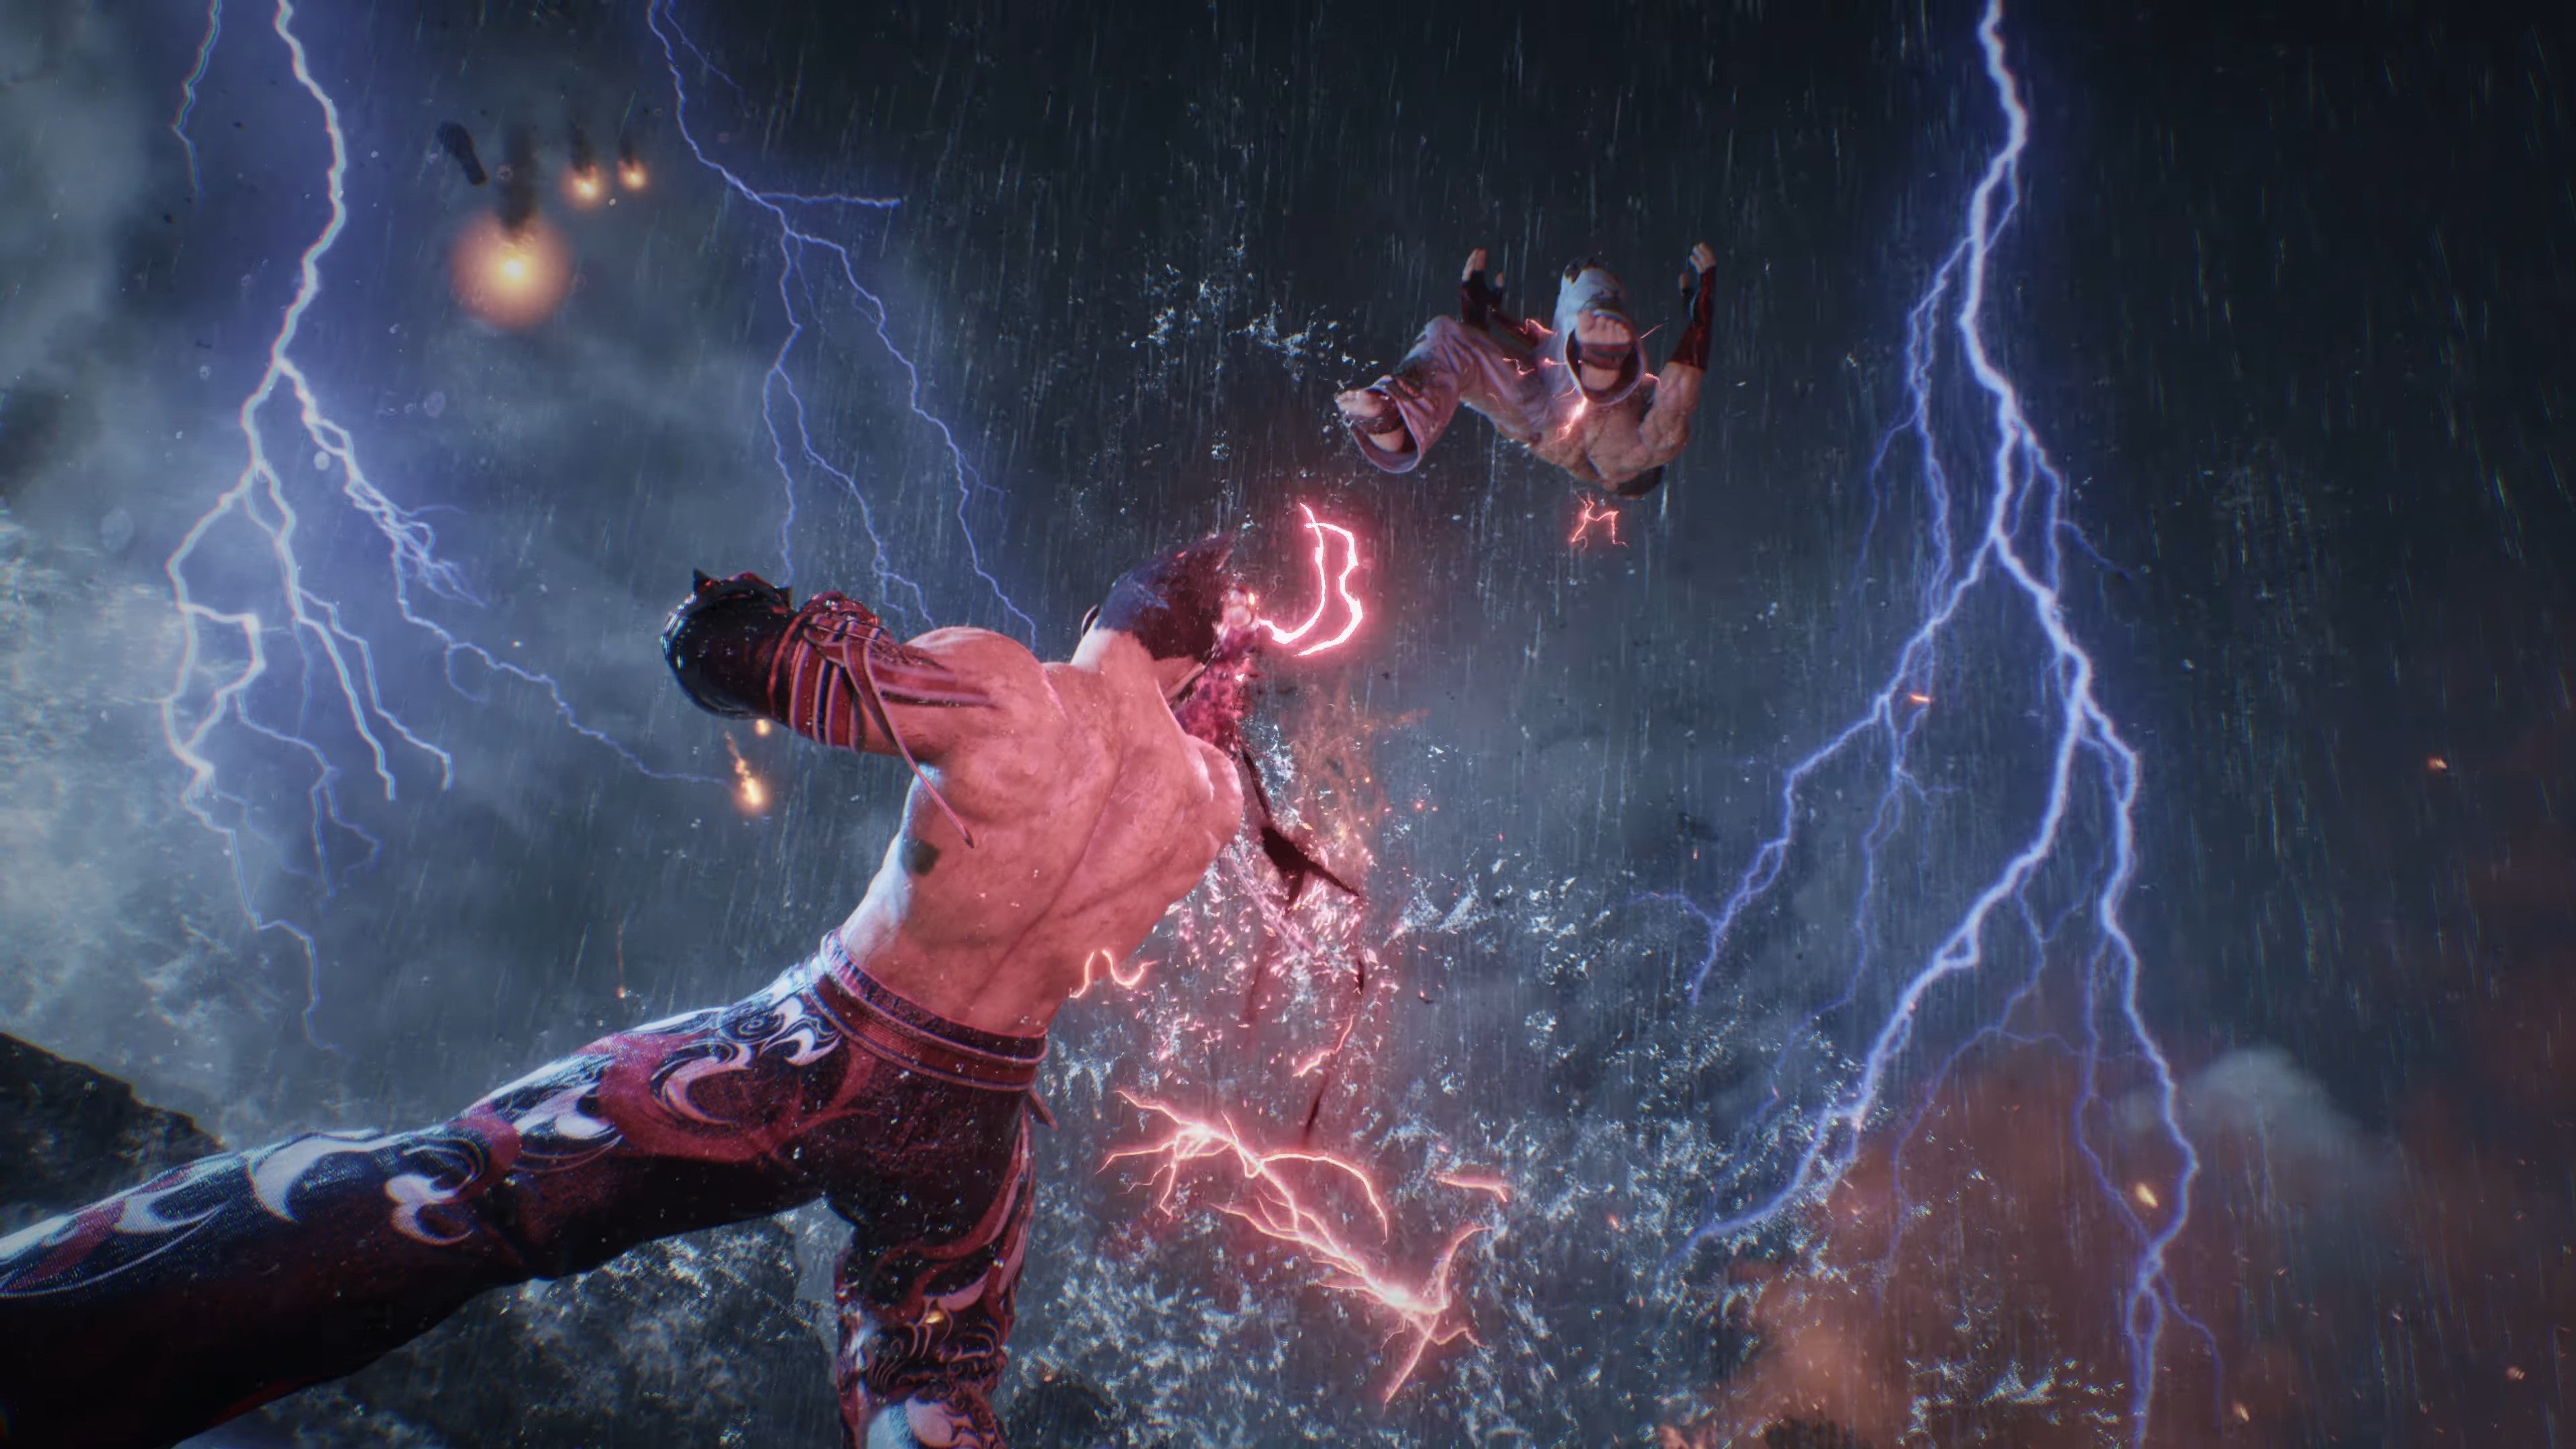 Bilder zu Tekken 8 offiziell angekündigt – der Trailer macht selbst Prügel-Muffeln wie mir mächtig Lust aufs Spiel